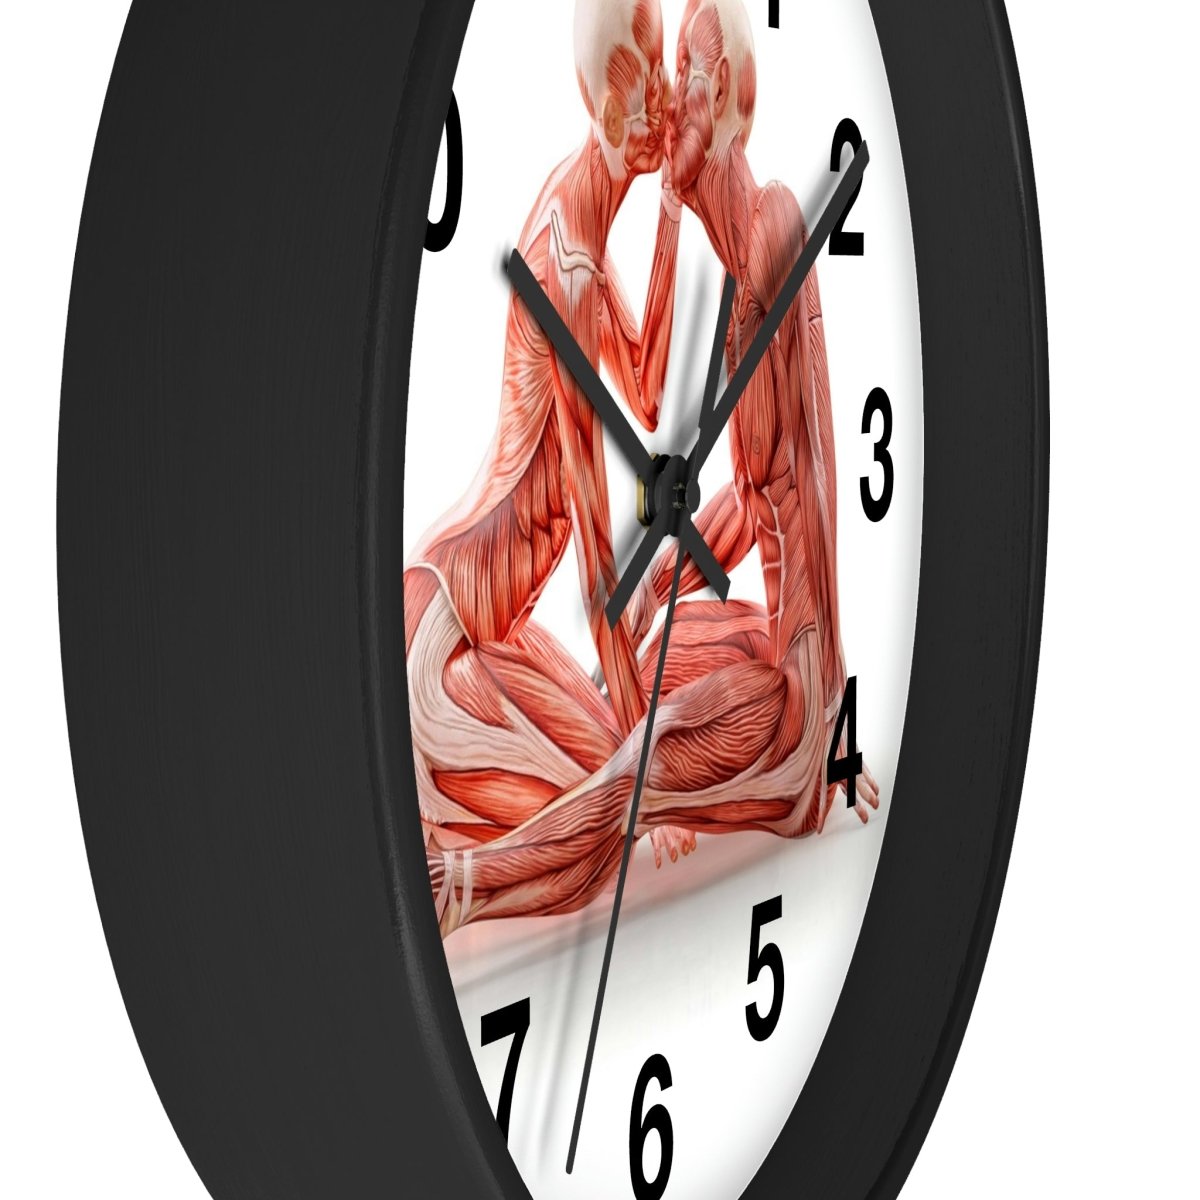 Anatomical Romance Wall Clock - Medical Clock Design